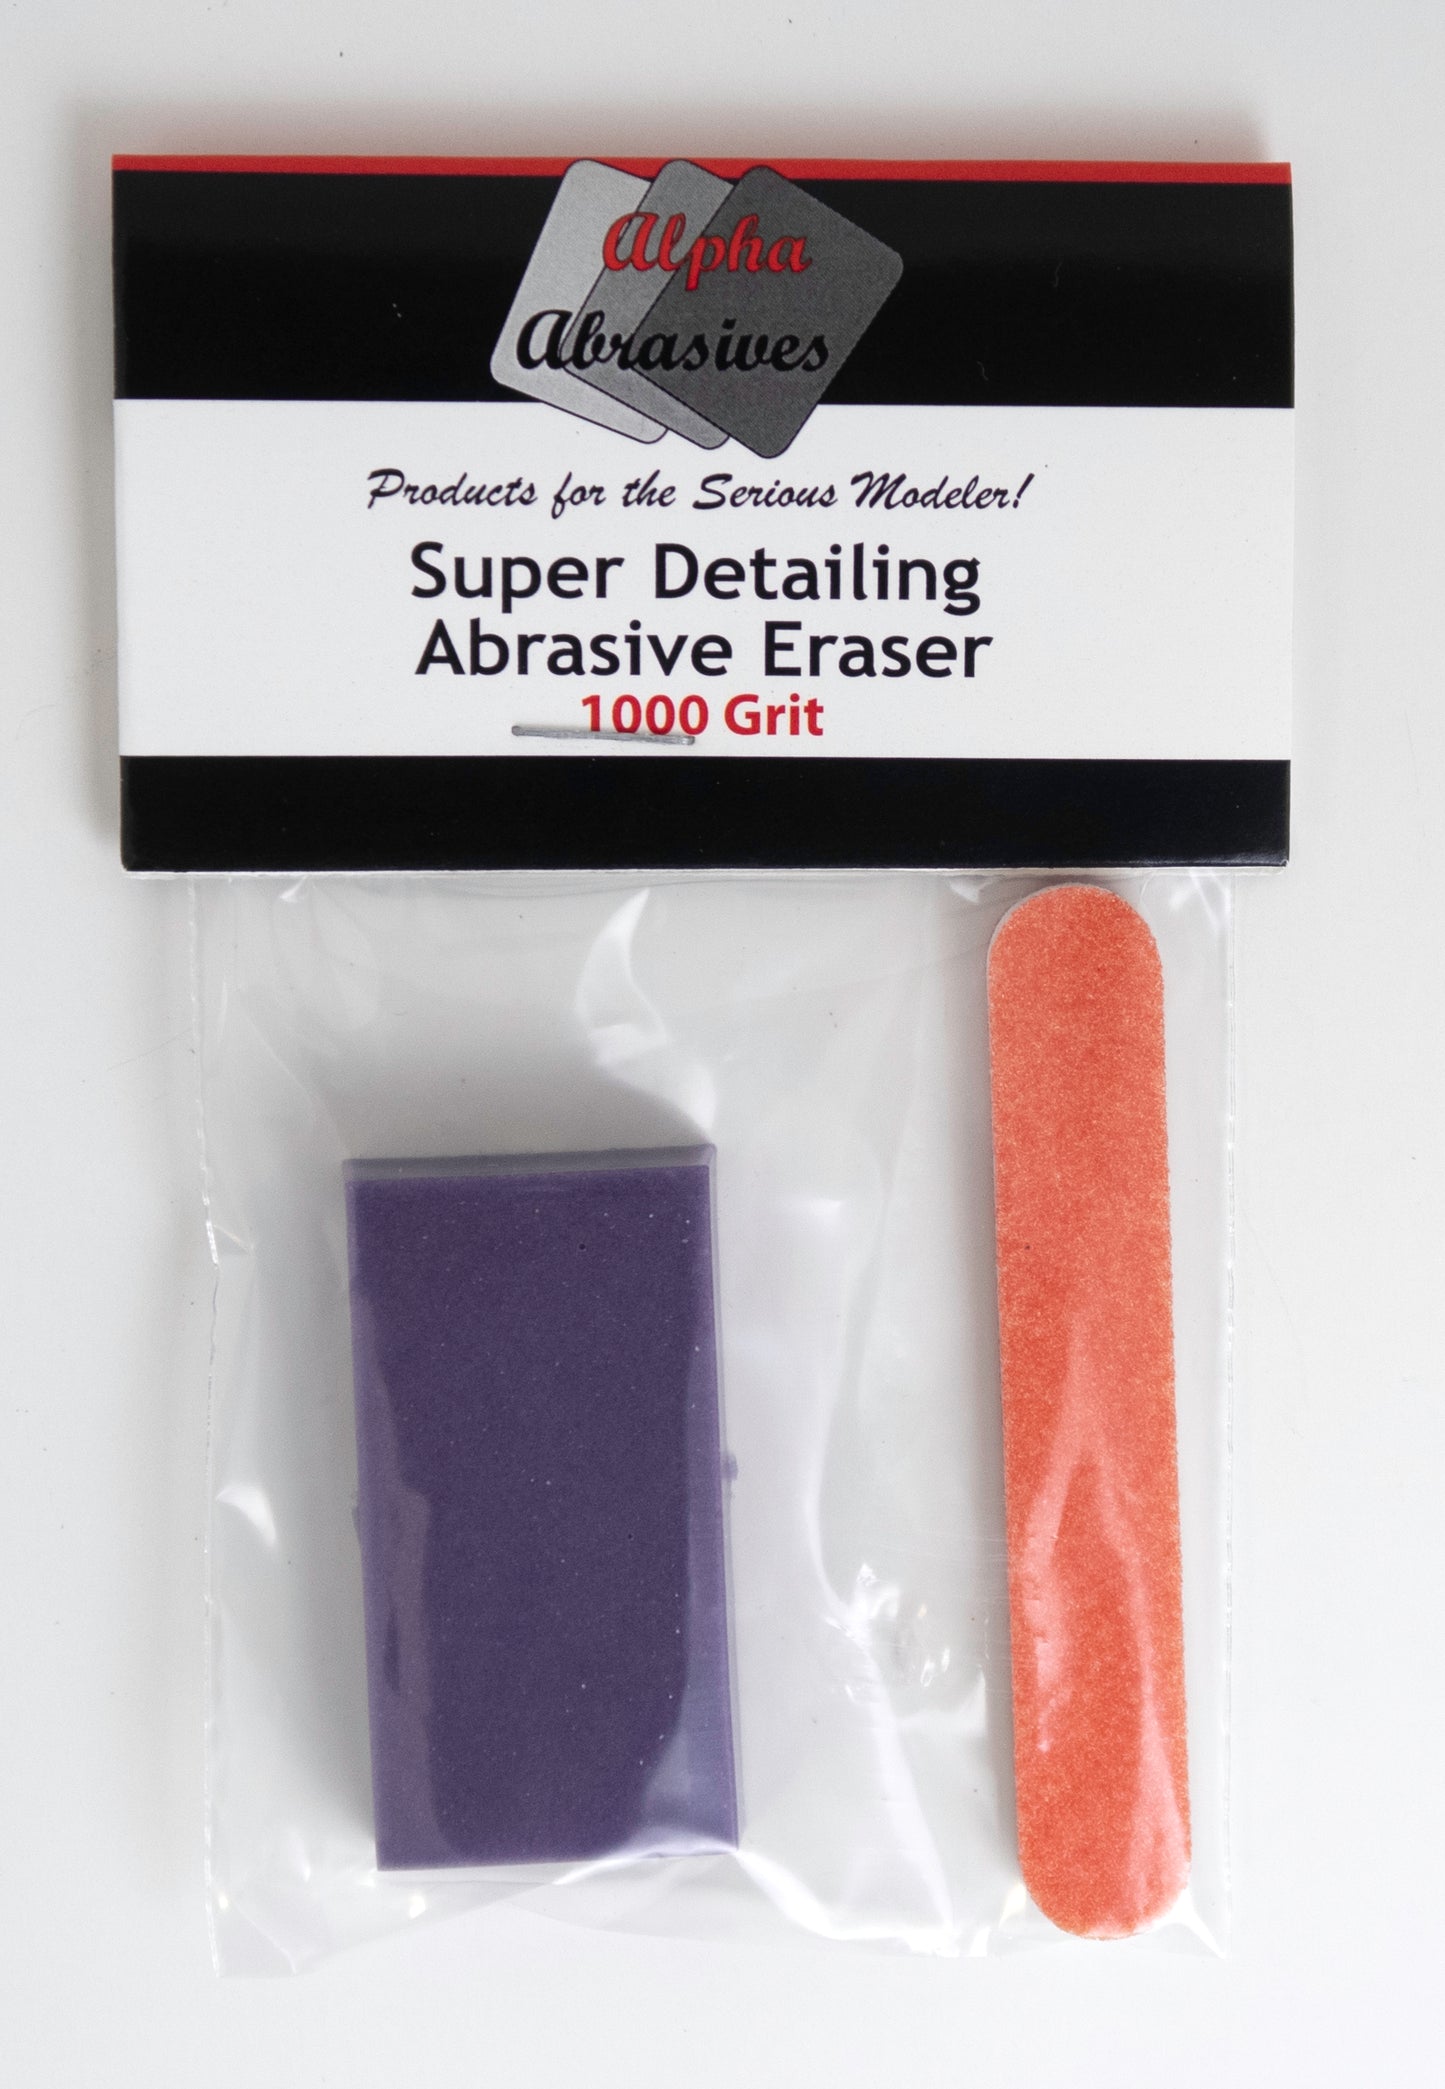 Super Detailing Abrasive Erasers